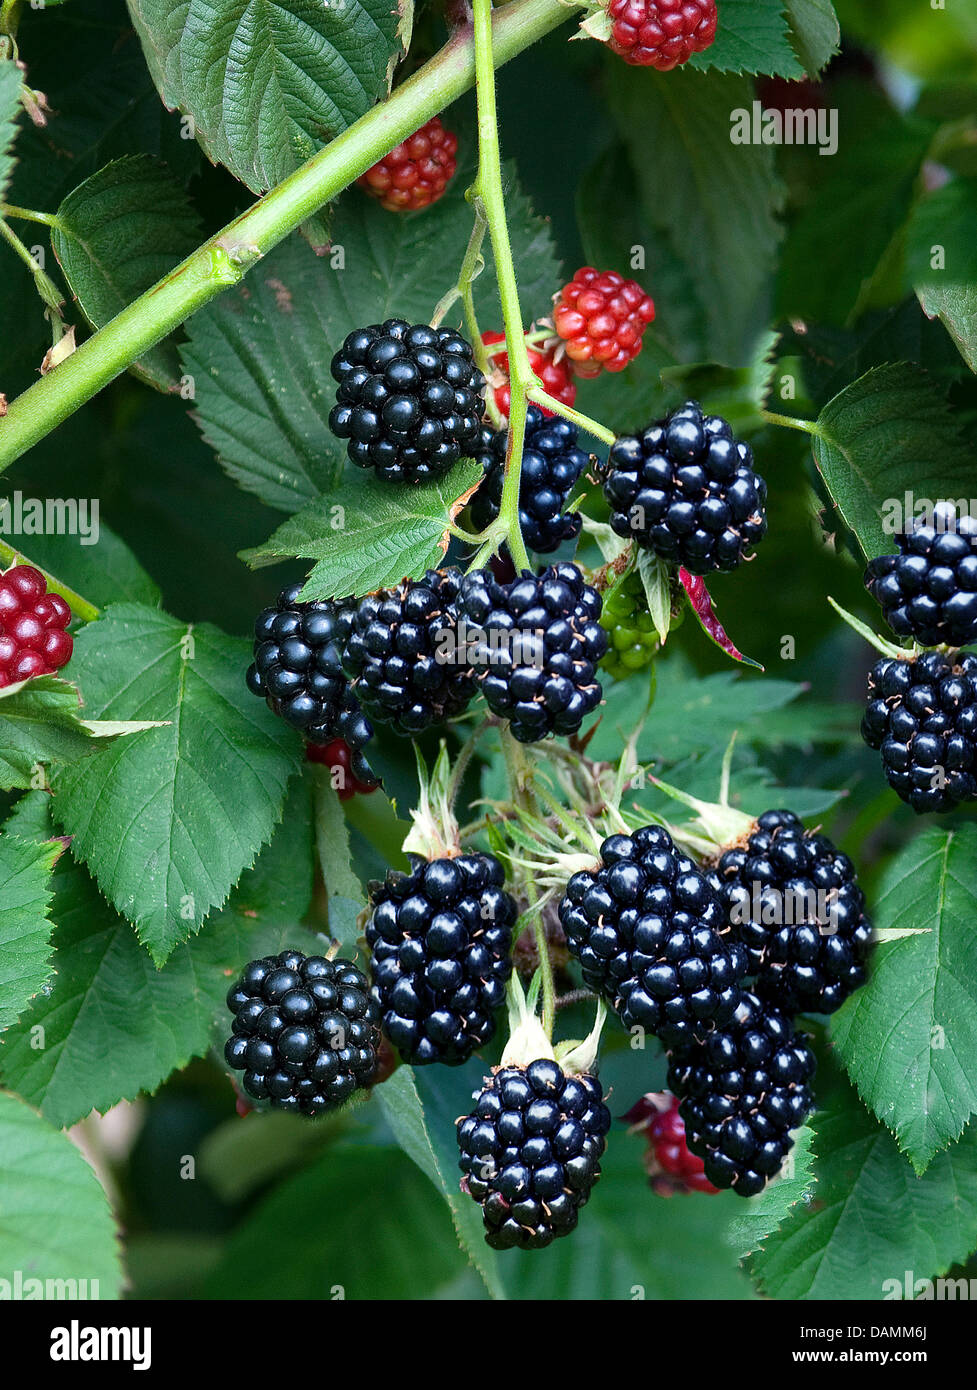 shrubby blackberry (Rubus fruticosus 'Chester Thornless', Rubus fruticosus Chester Thornless), cultivar Chester Thornless Stock Photo